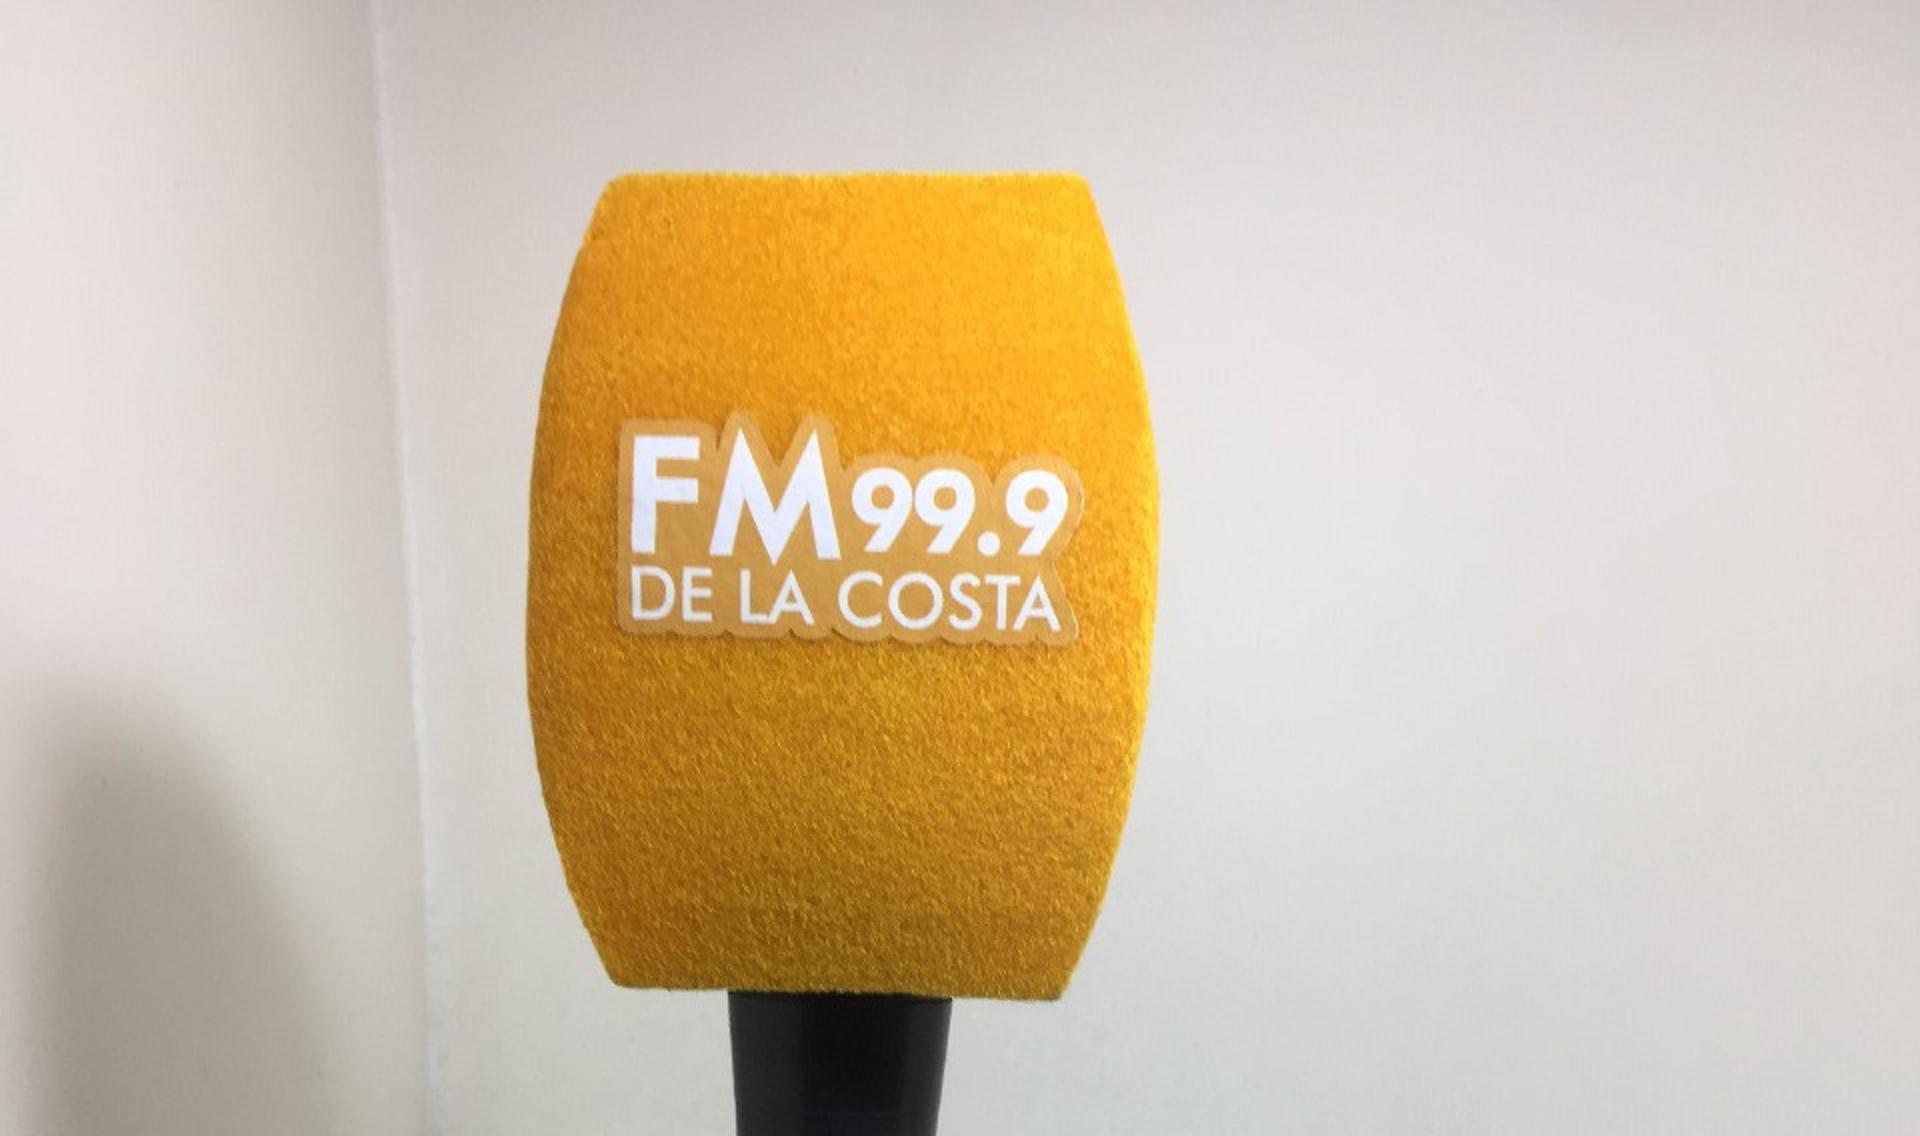 Oyente | Agradecimiento a FM de la Costa